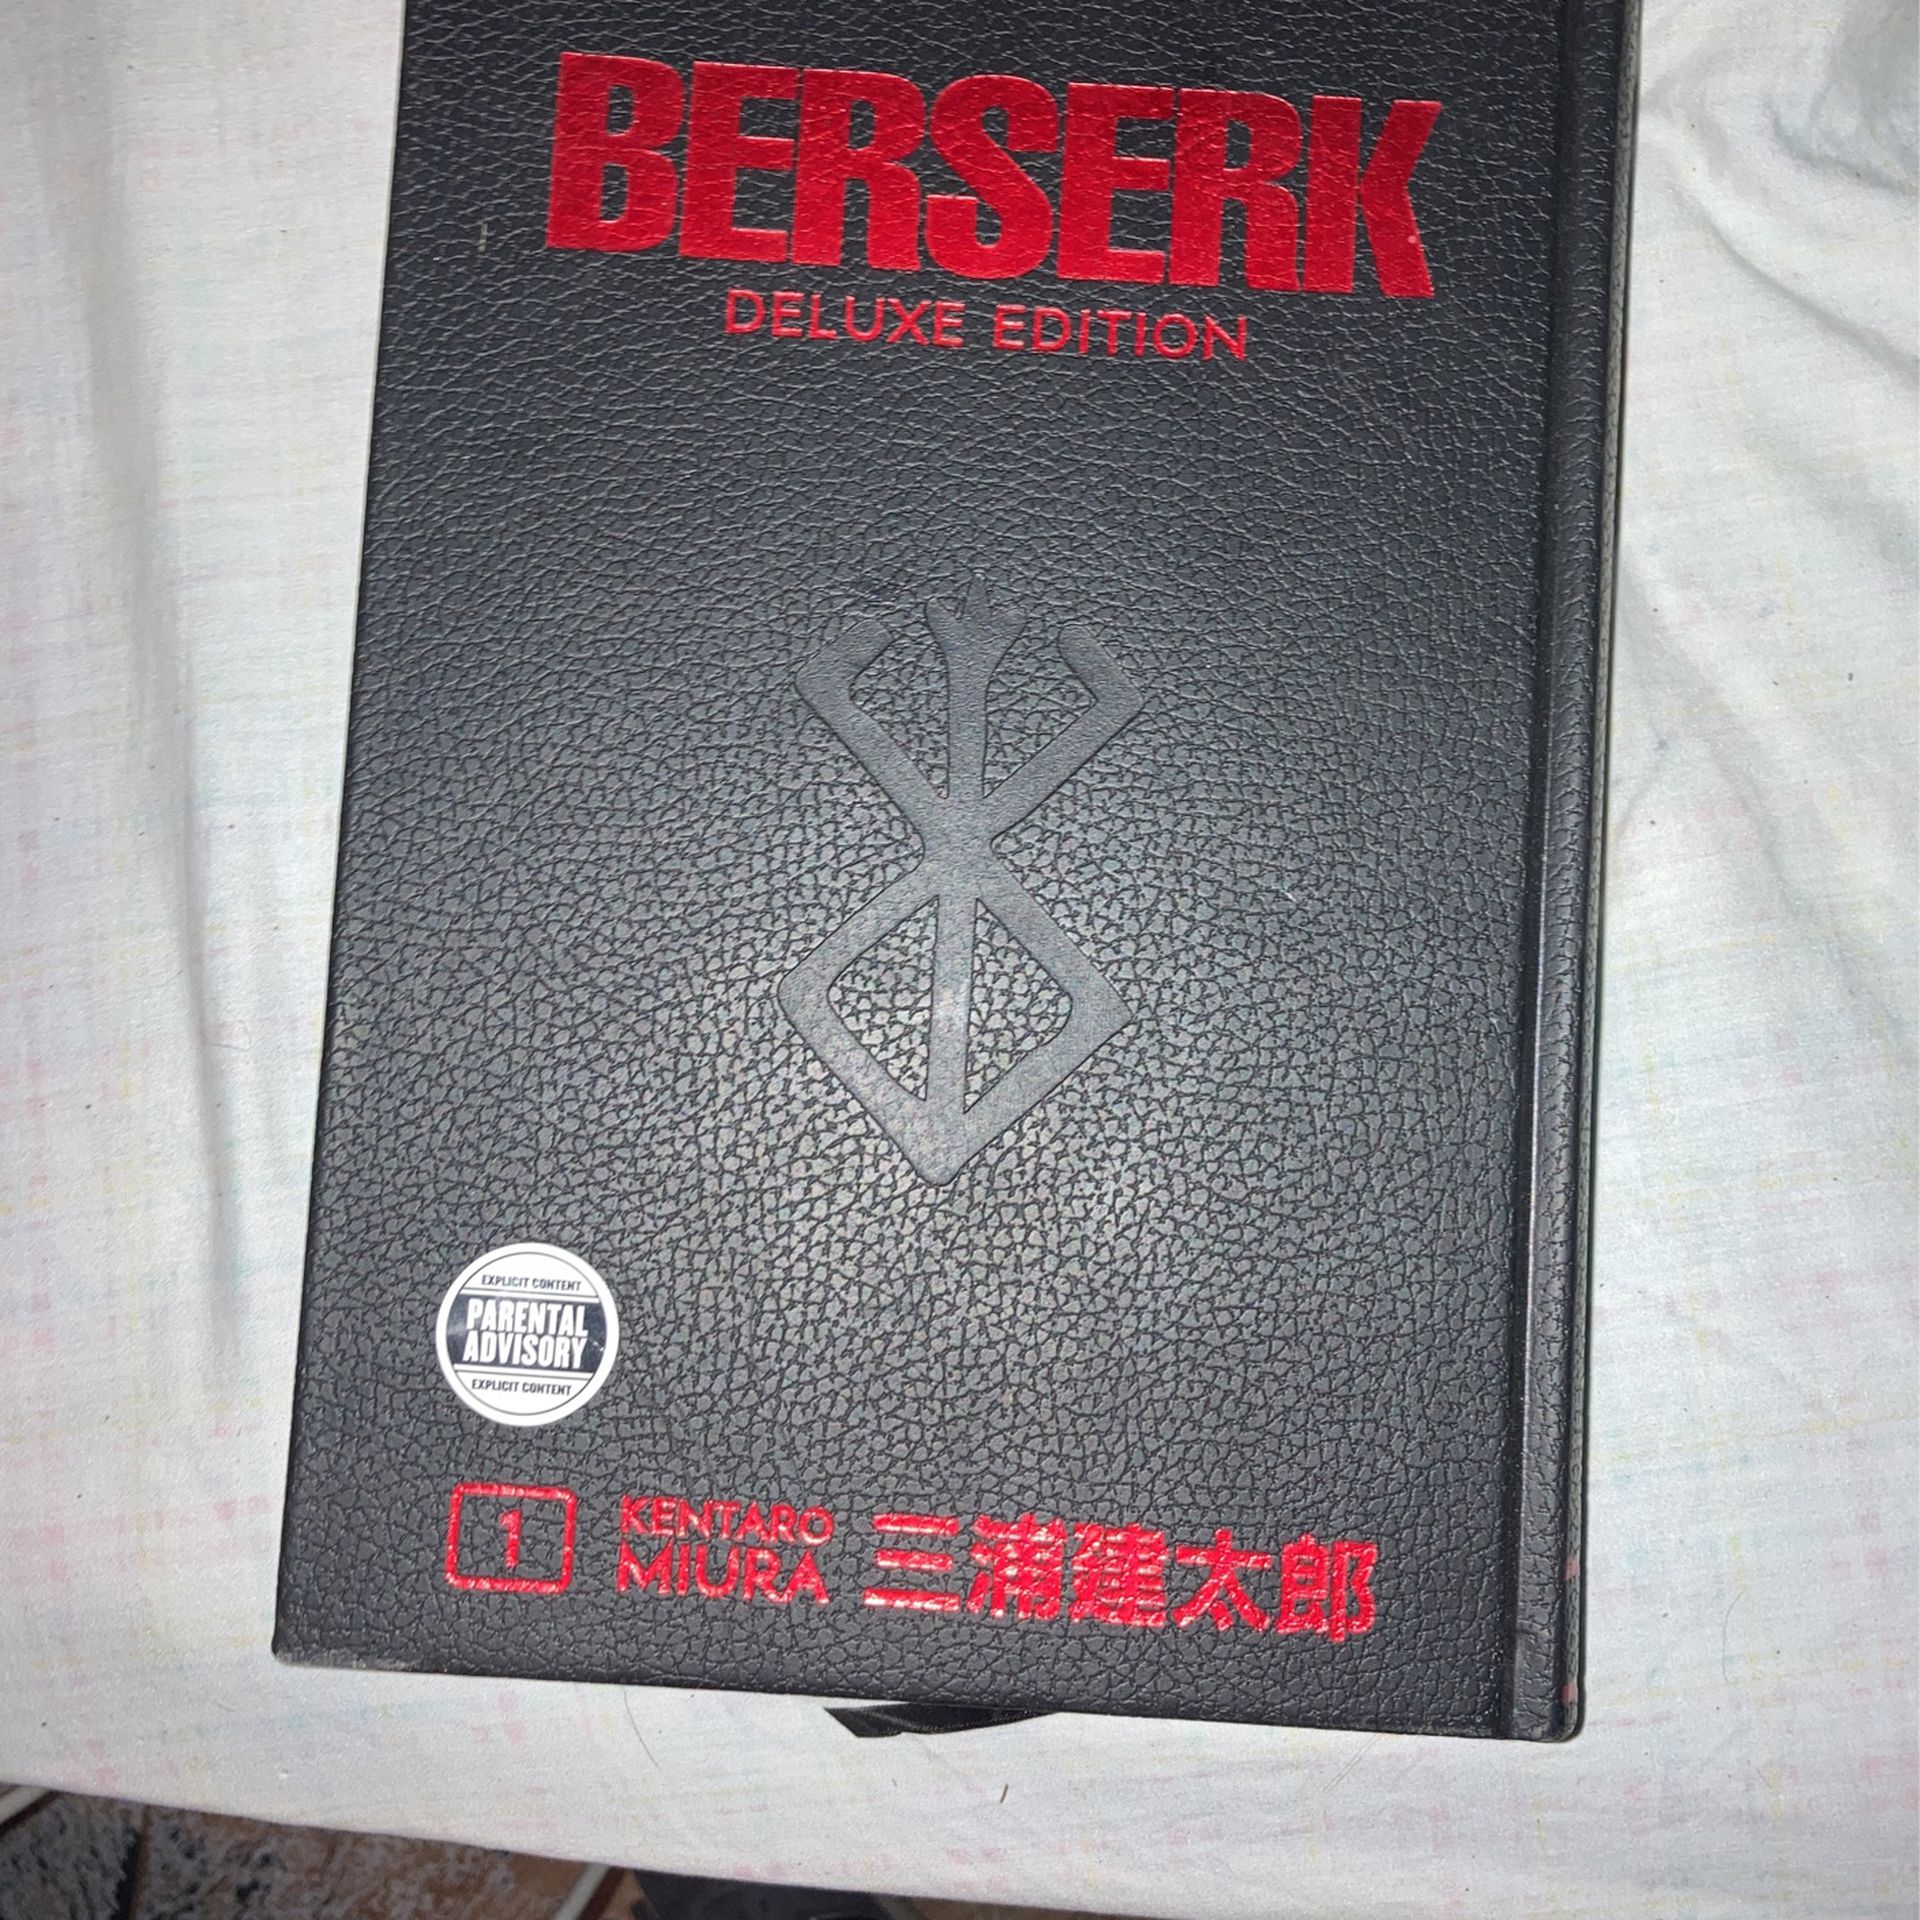 Berserk Volume 1